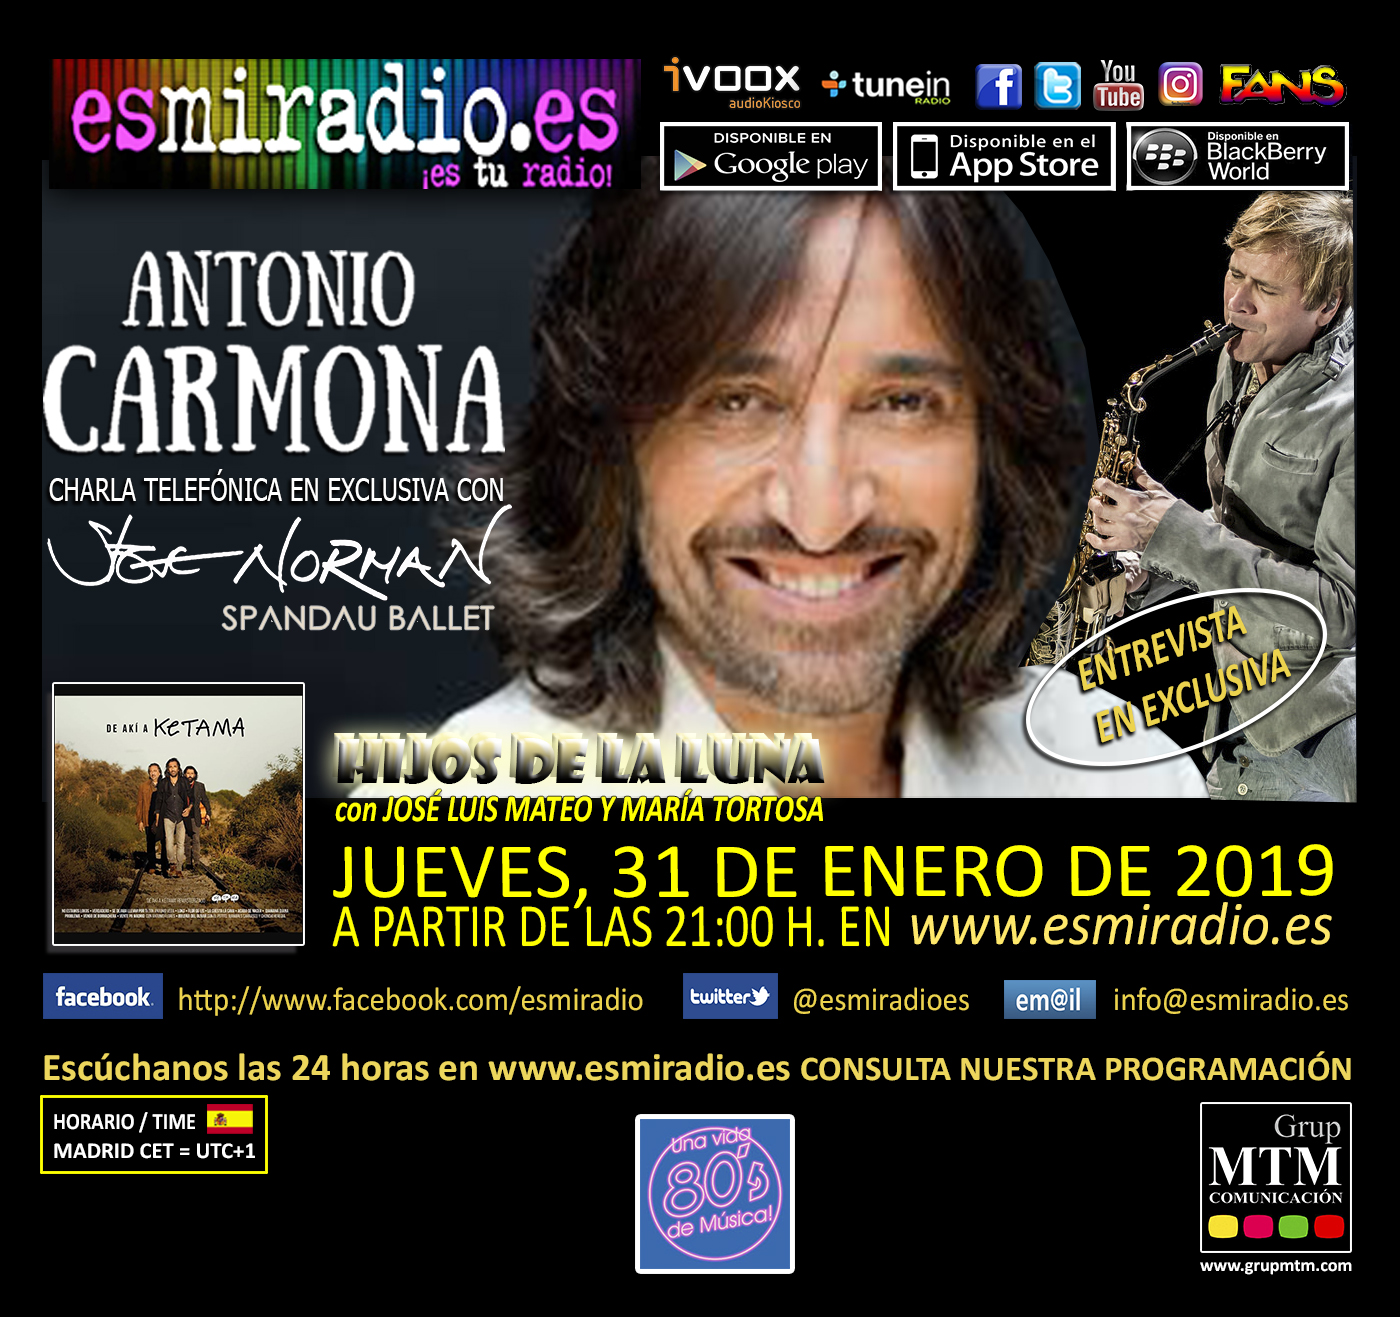 Antonio-Carmona-310119-esmiradio.jpg